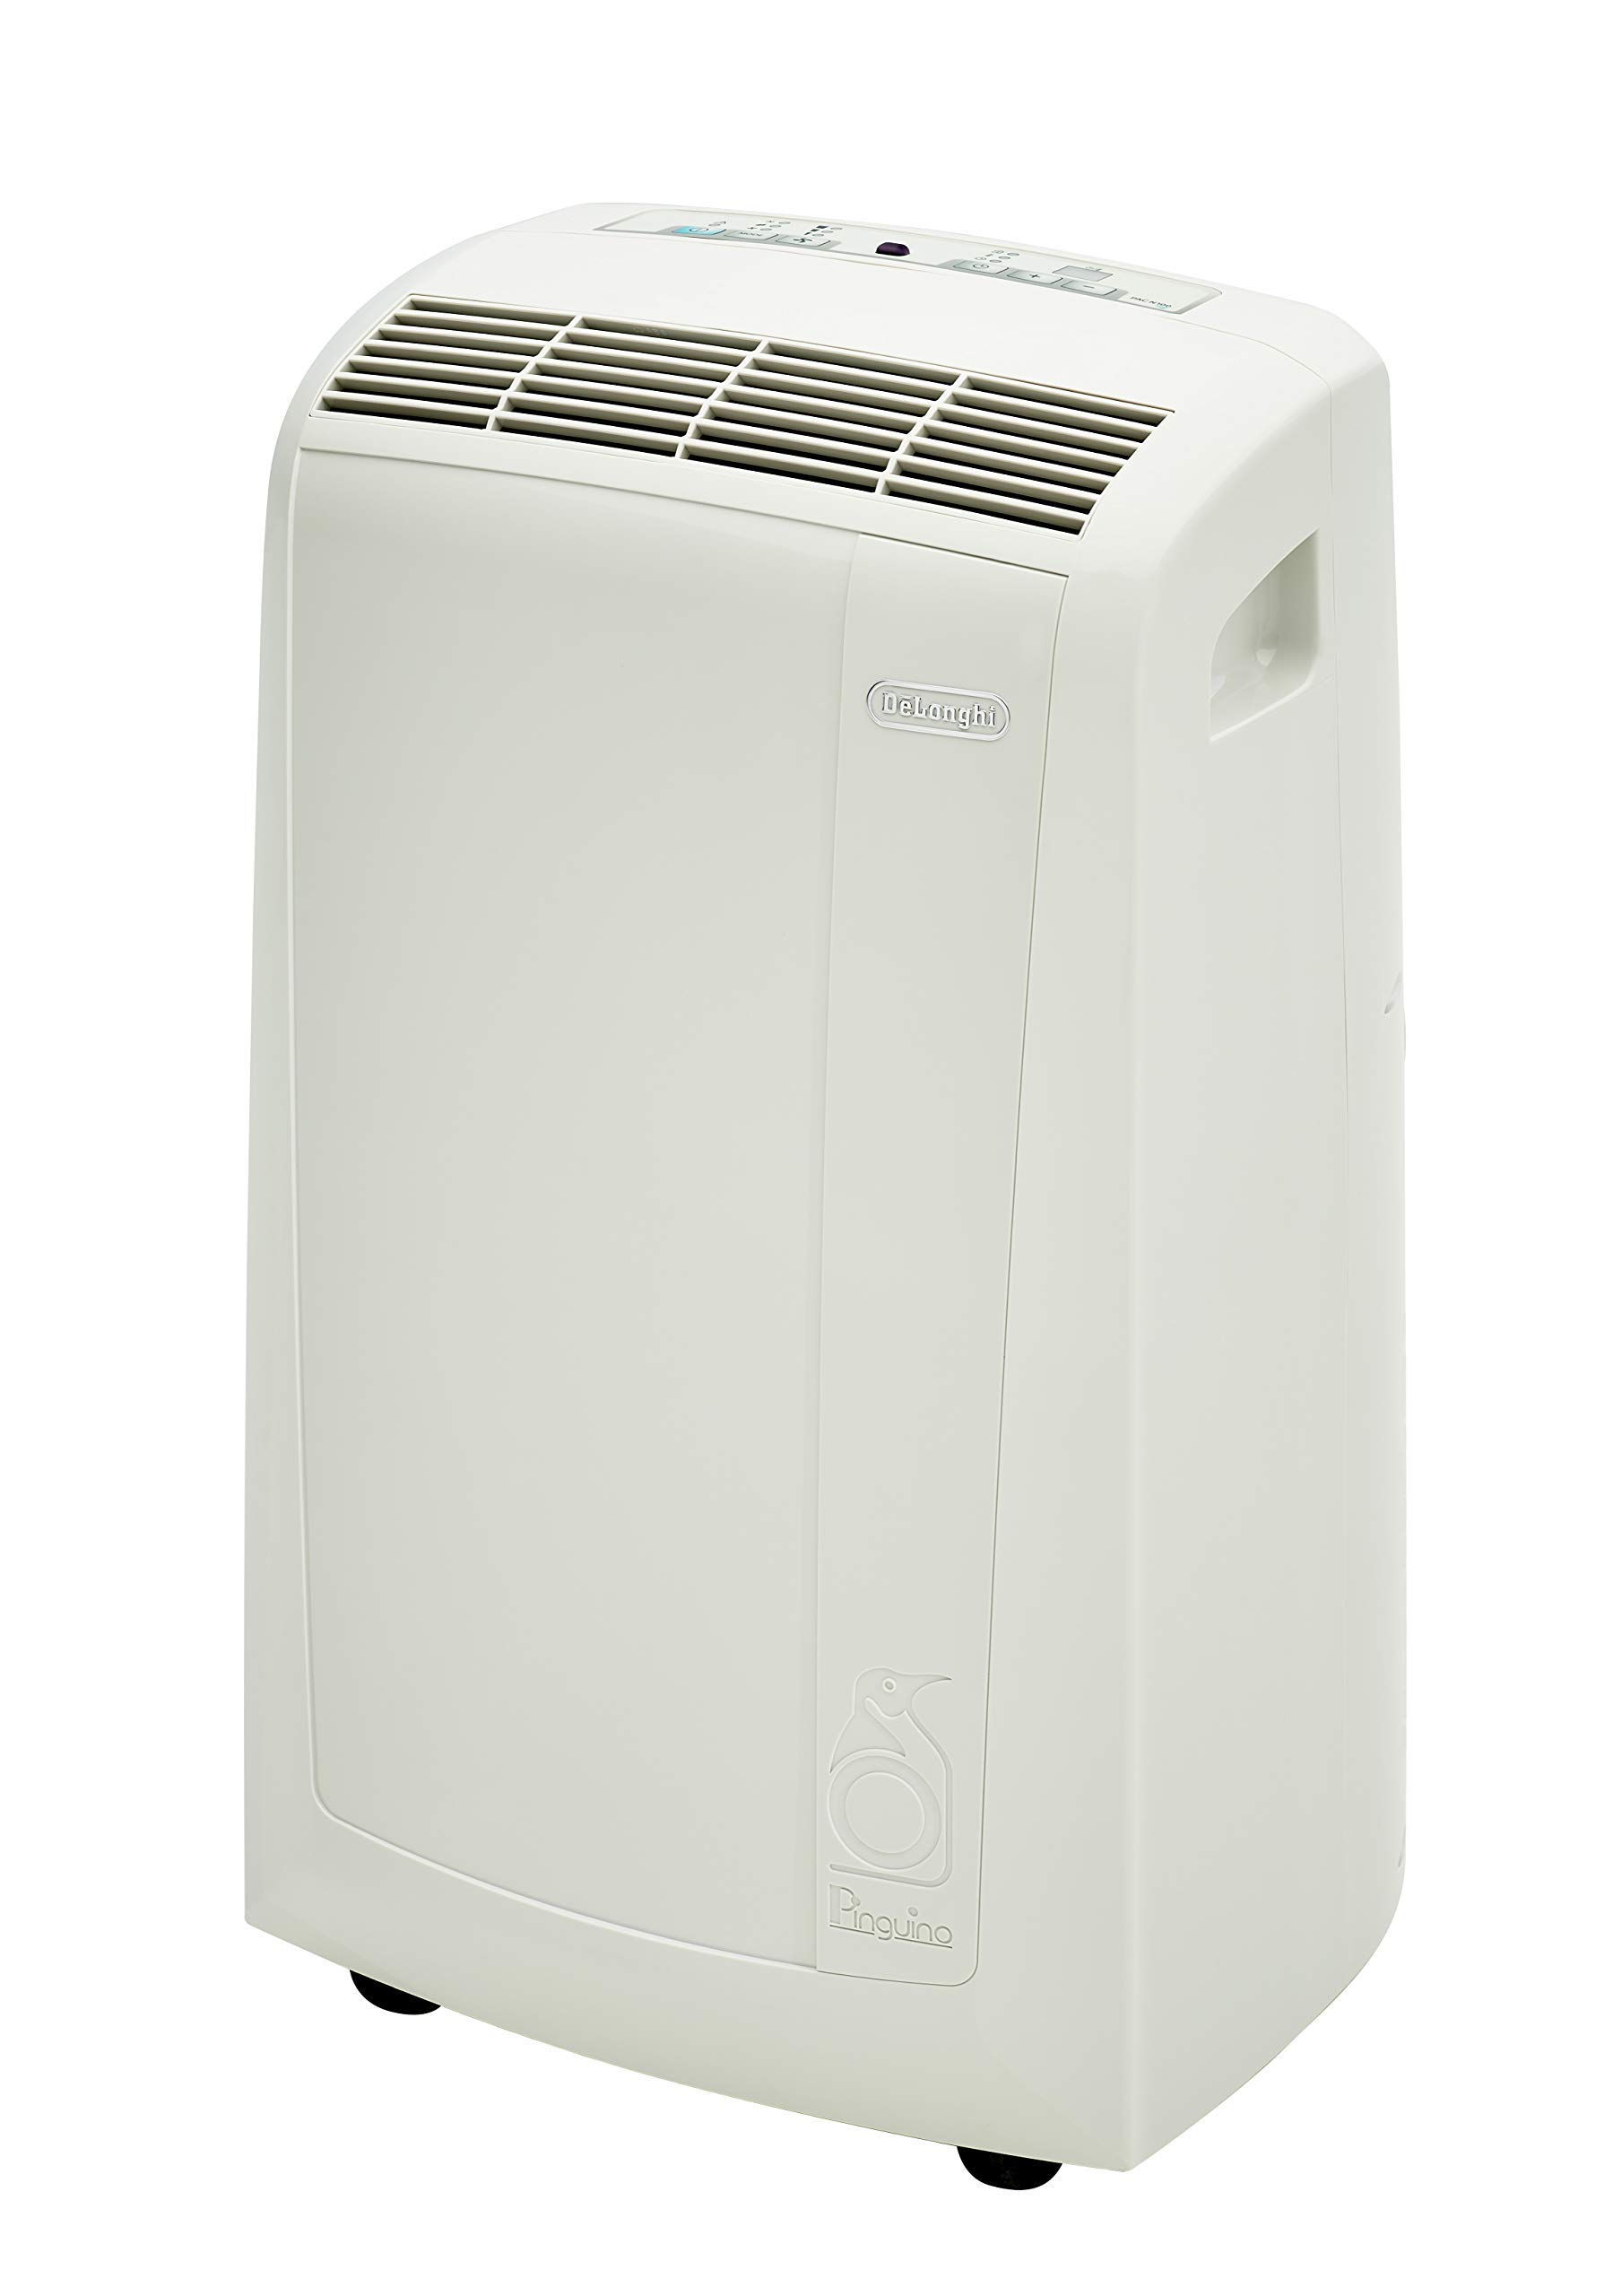 Delongi Air Conditioners